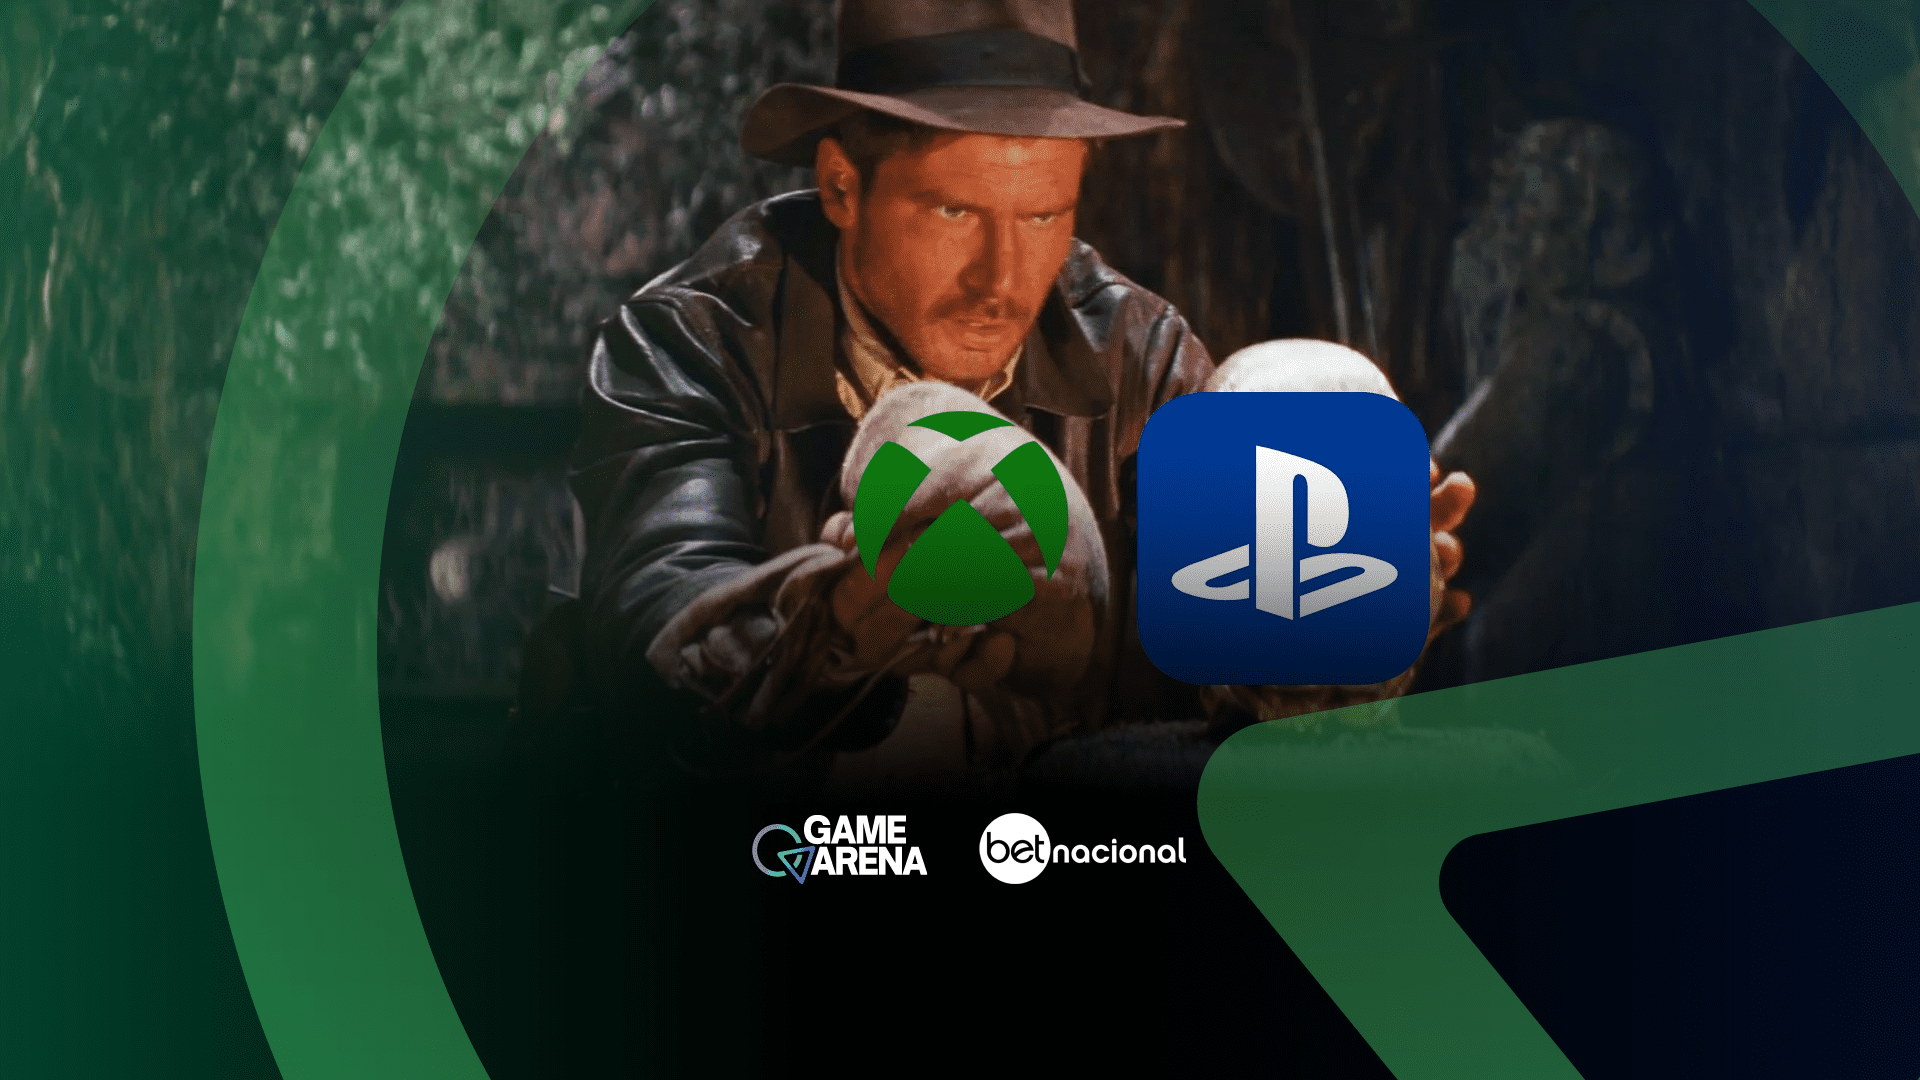 Bethesda: Microsoft diz que alguns jogos serão exclusivos para Xbox e PC